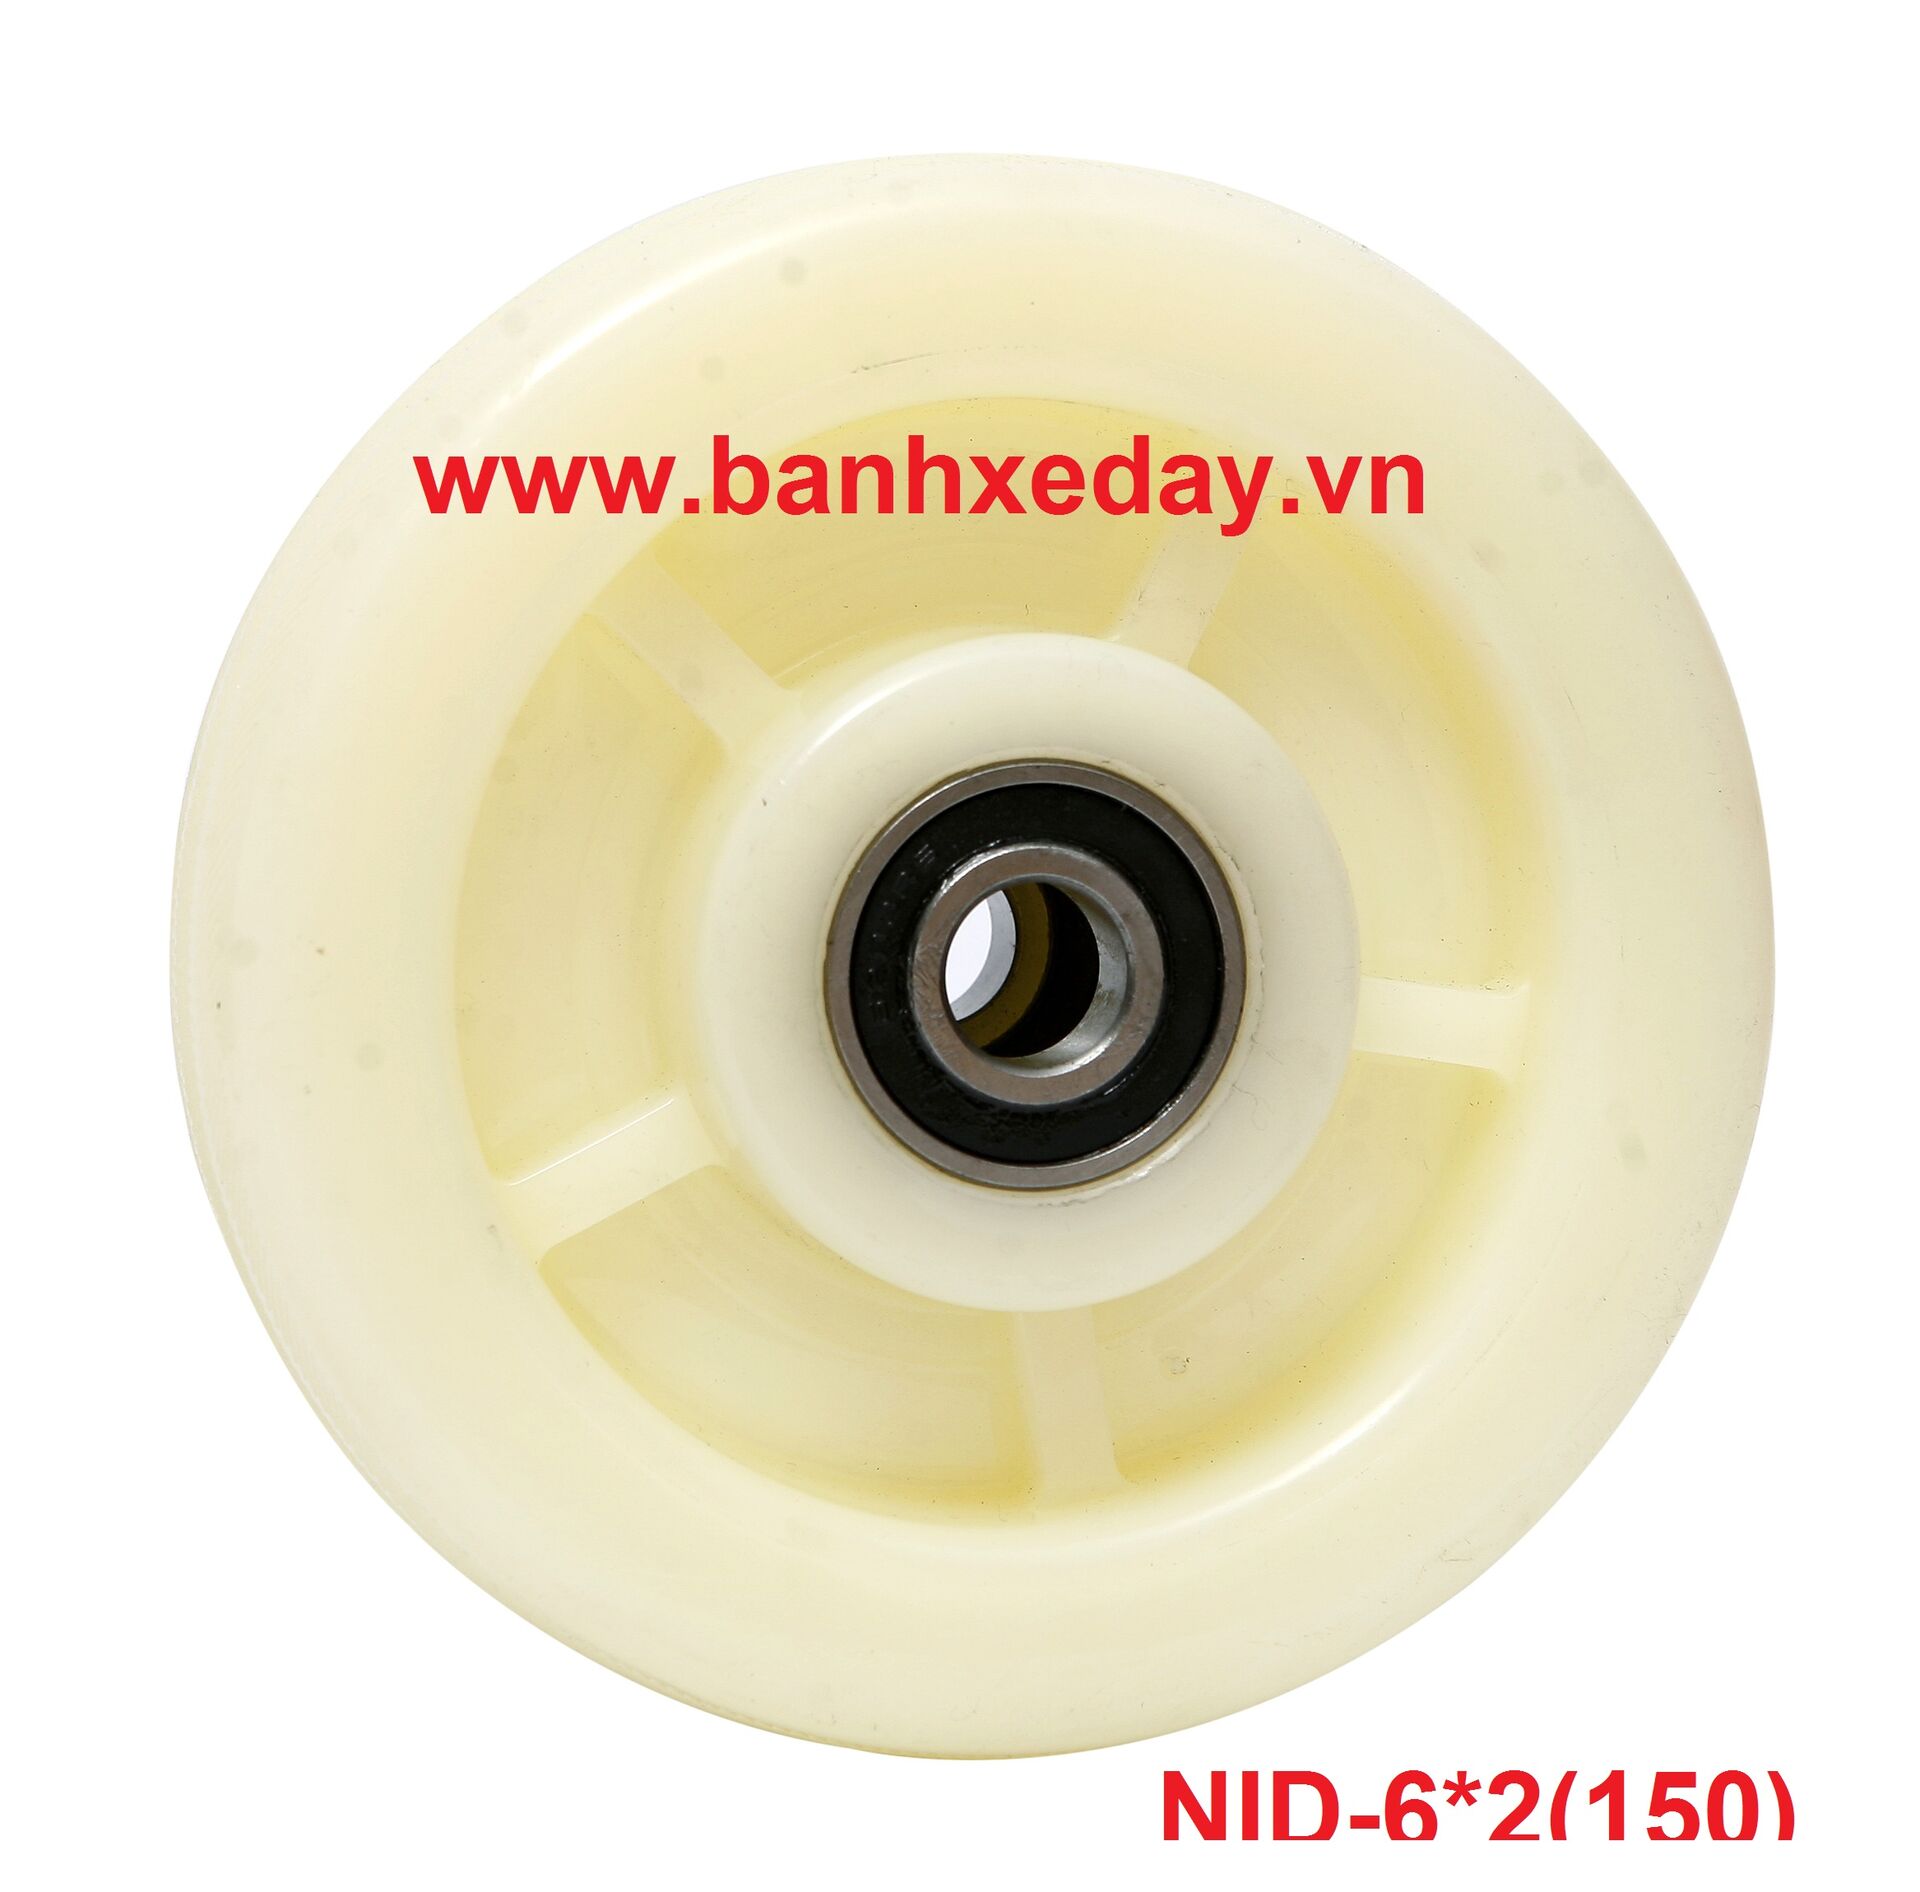 banh-xe-nylon-dac-nid-150.jpg